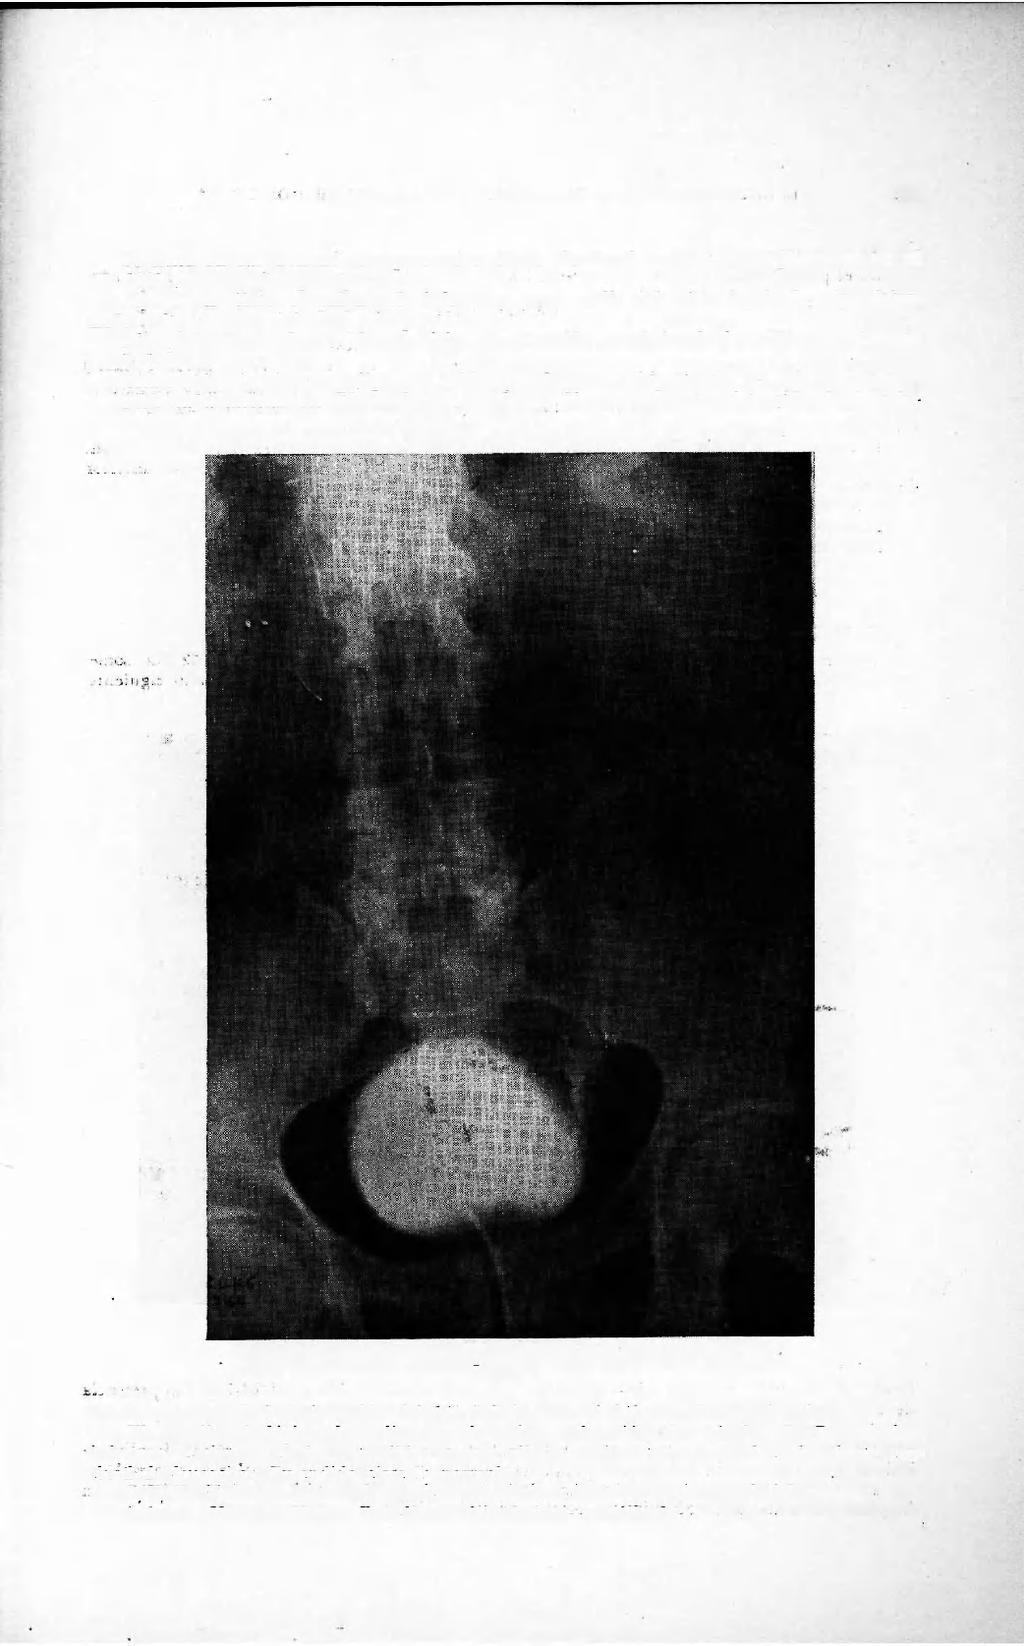 TUMORES PRIMITIVOS DE URETER 151 Presenta en sus antecedentes personales úlcera duodenal tratada quirúrgicamente en el año 1948 y eventración postoperatoria.